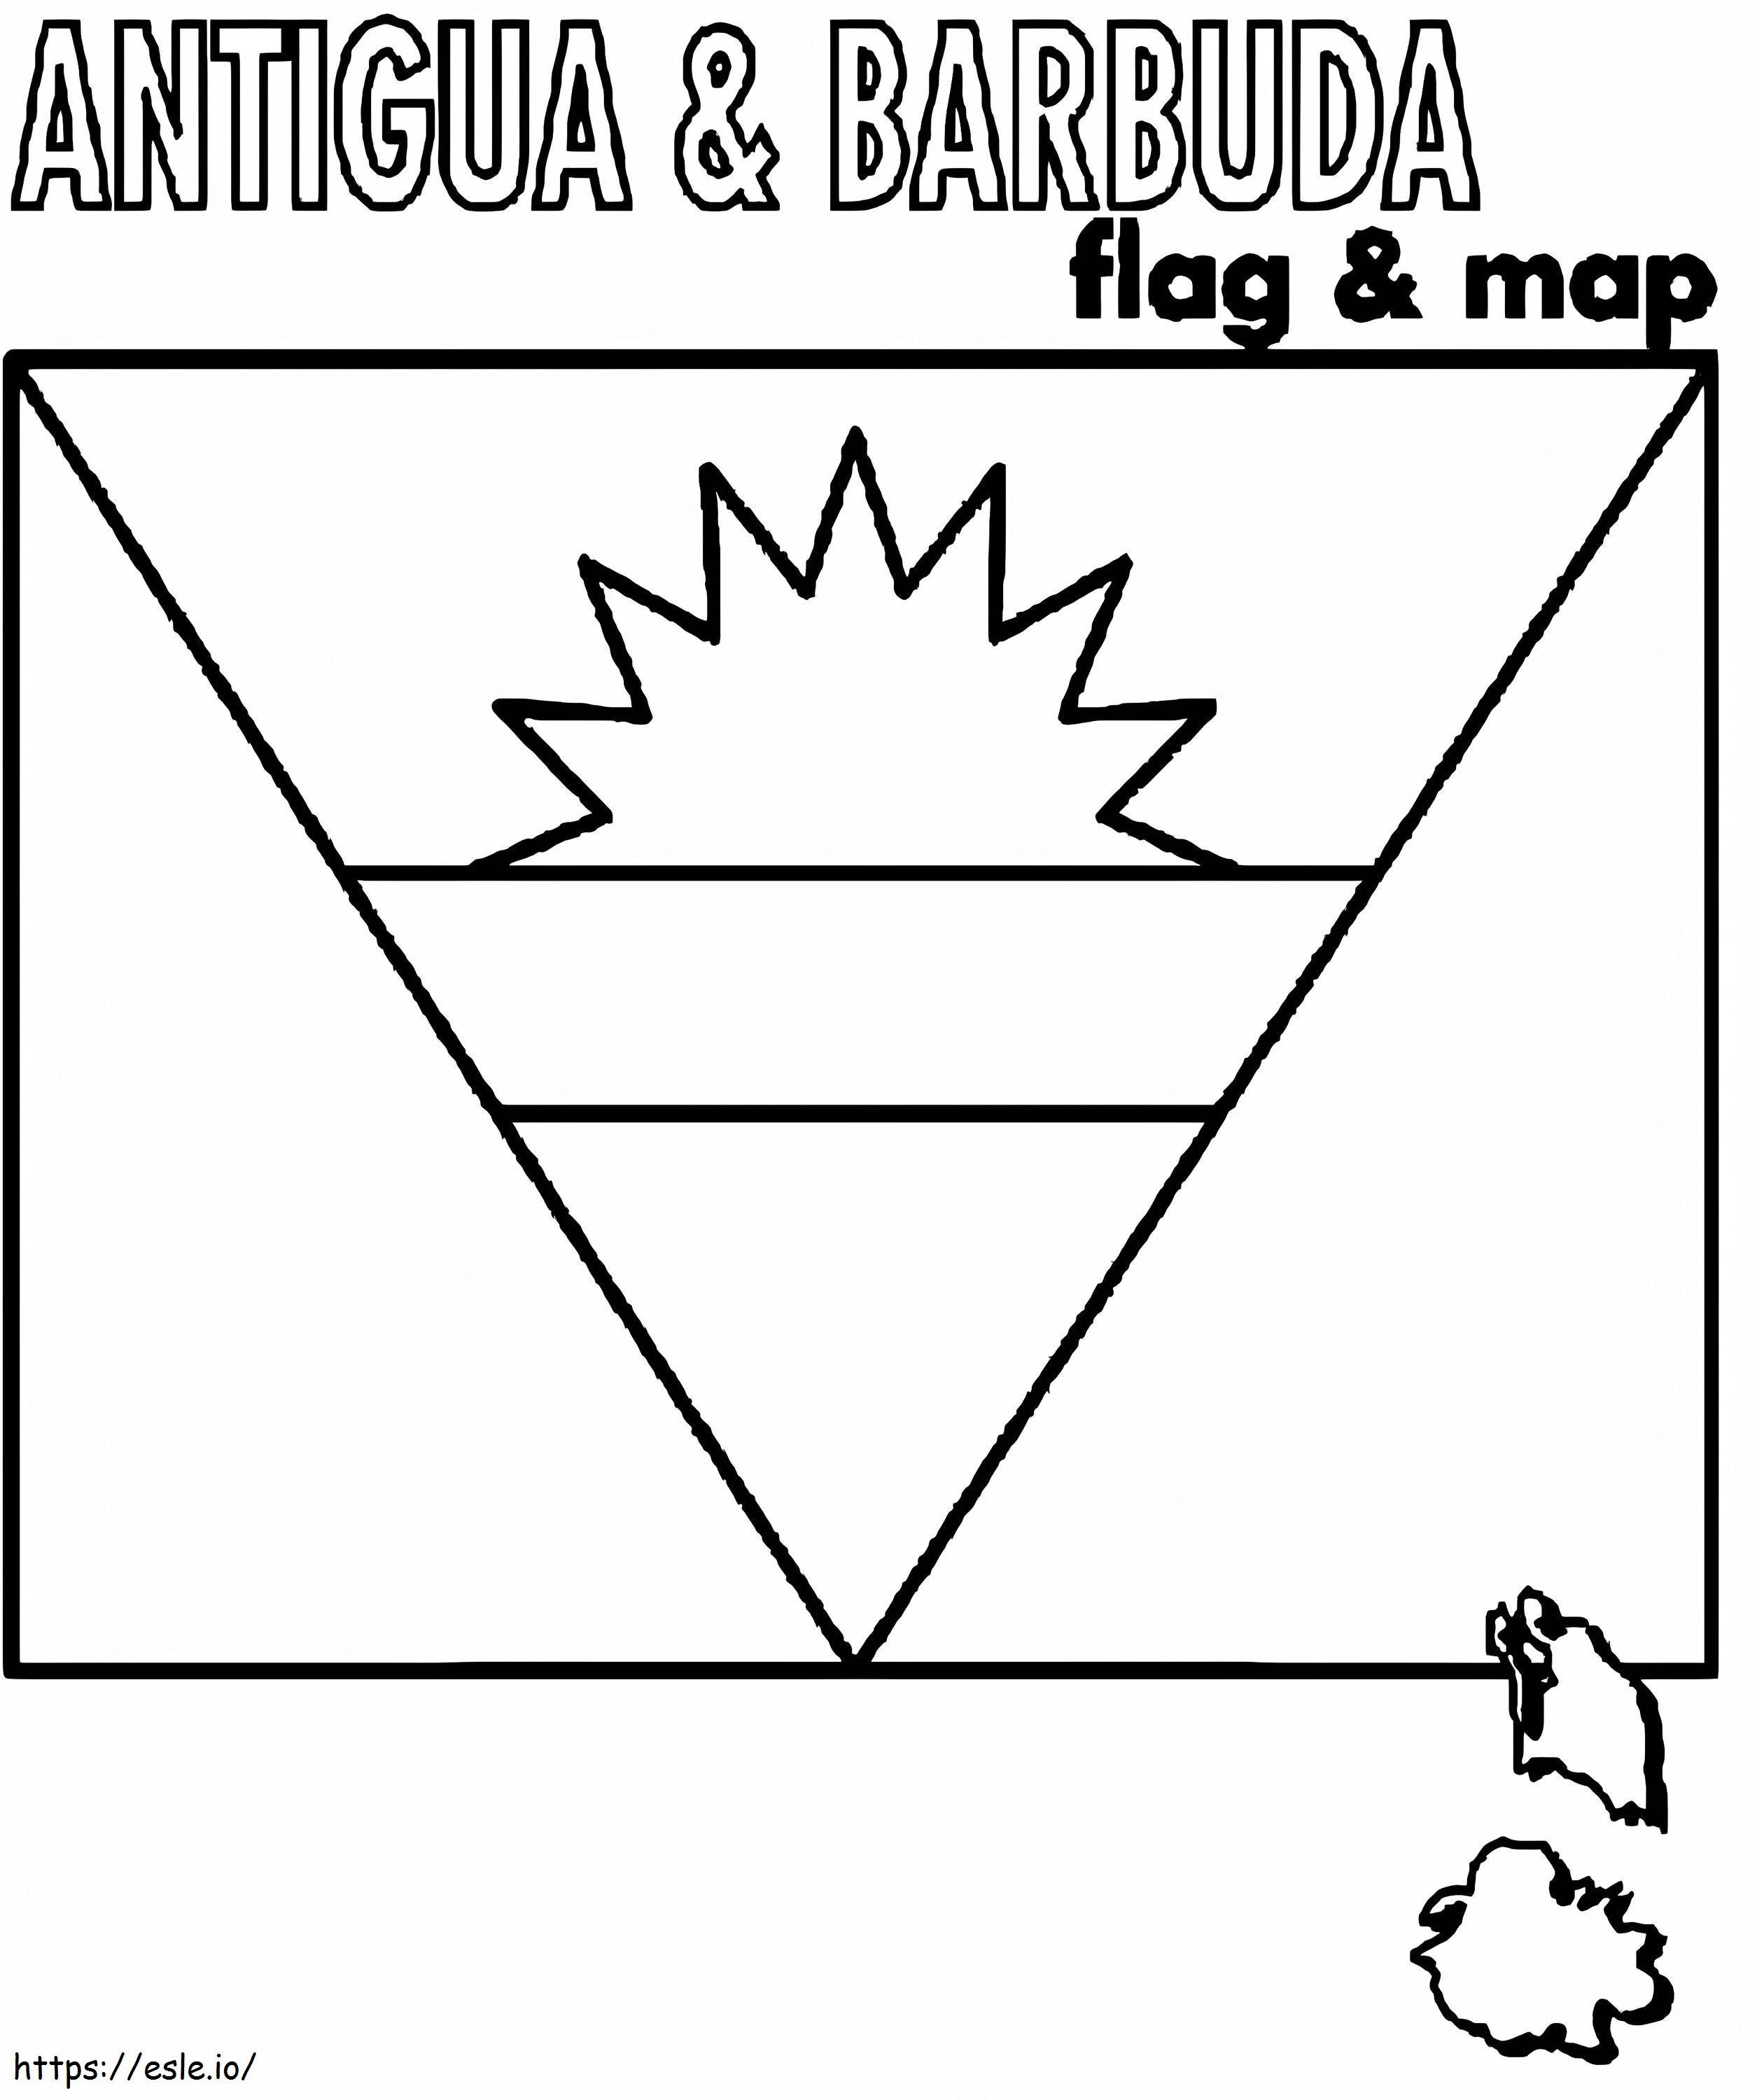 Bandiera e mappa di Antigua e Barbuda da colorare